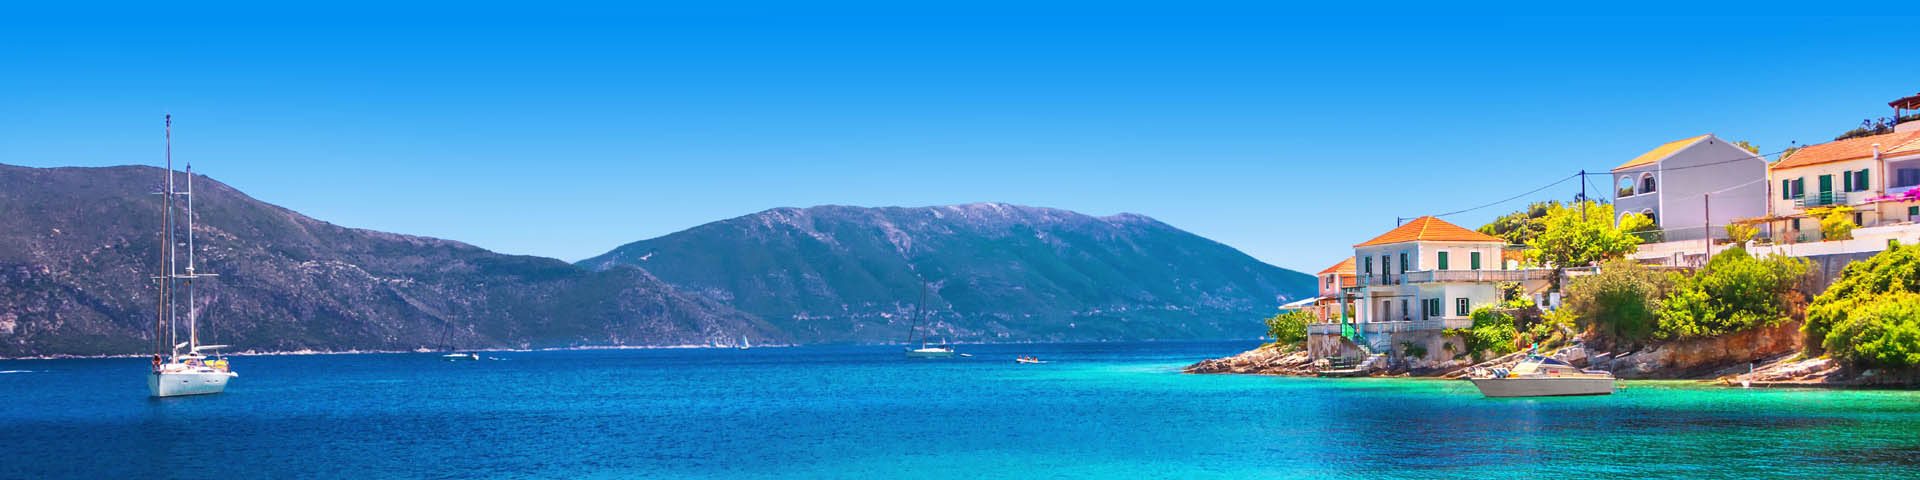 Helderblauwe zee in Griekenland